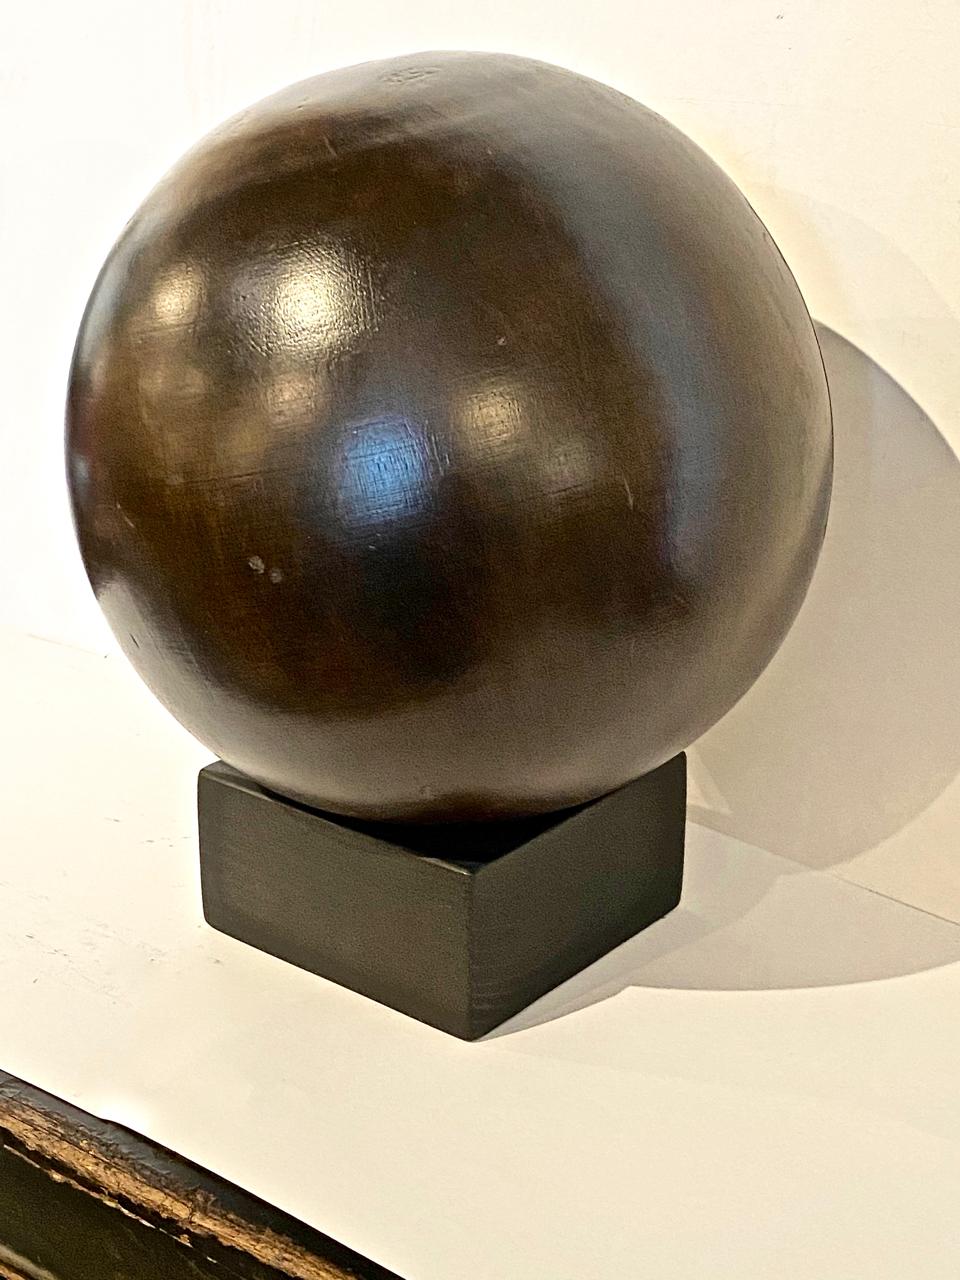 Il s'agit d'un exemple de boule de bowling en Lignum Vitae du début du 20e siècle sur pied. Cette balle n'a pas été percée pour des prises de doigts, peut-être à cause de la fente montrée sur les photos. La boule ferait un excellent élément